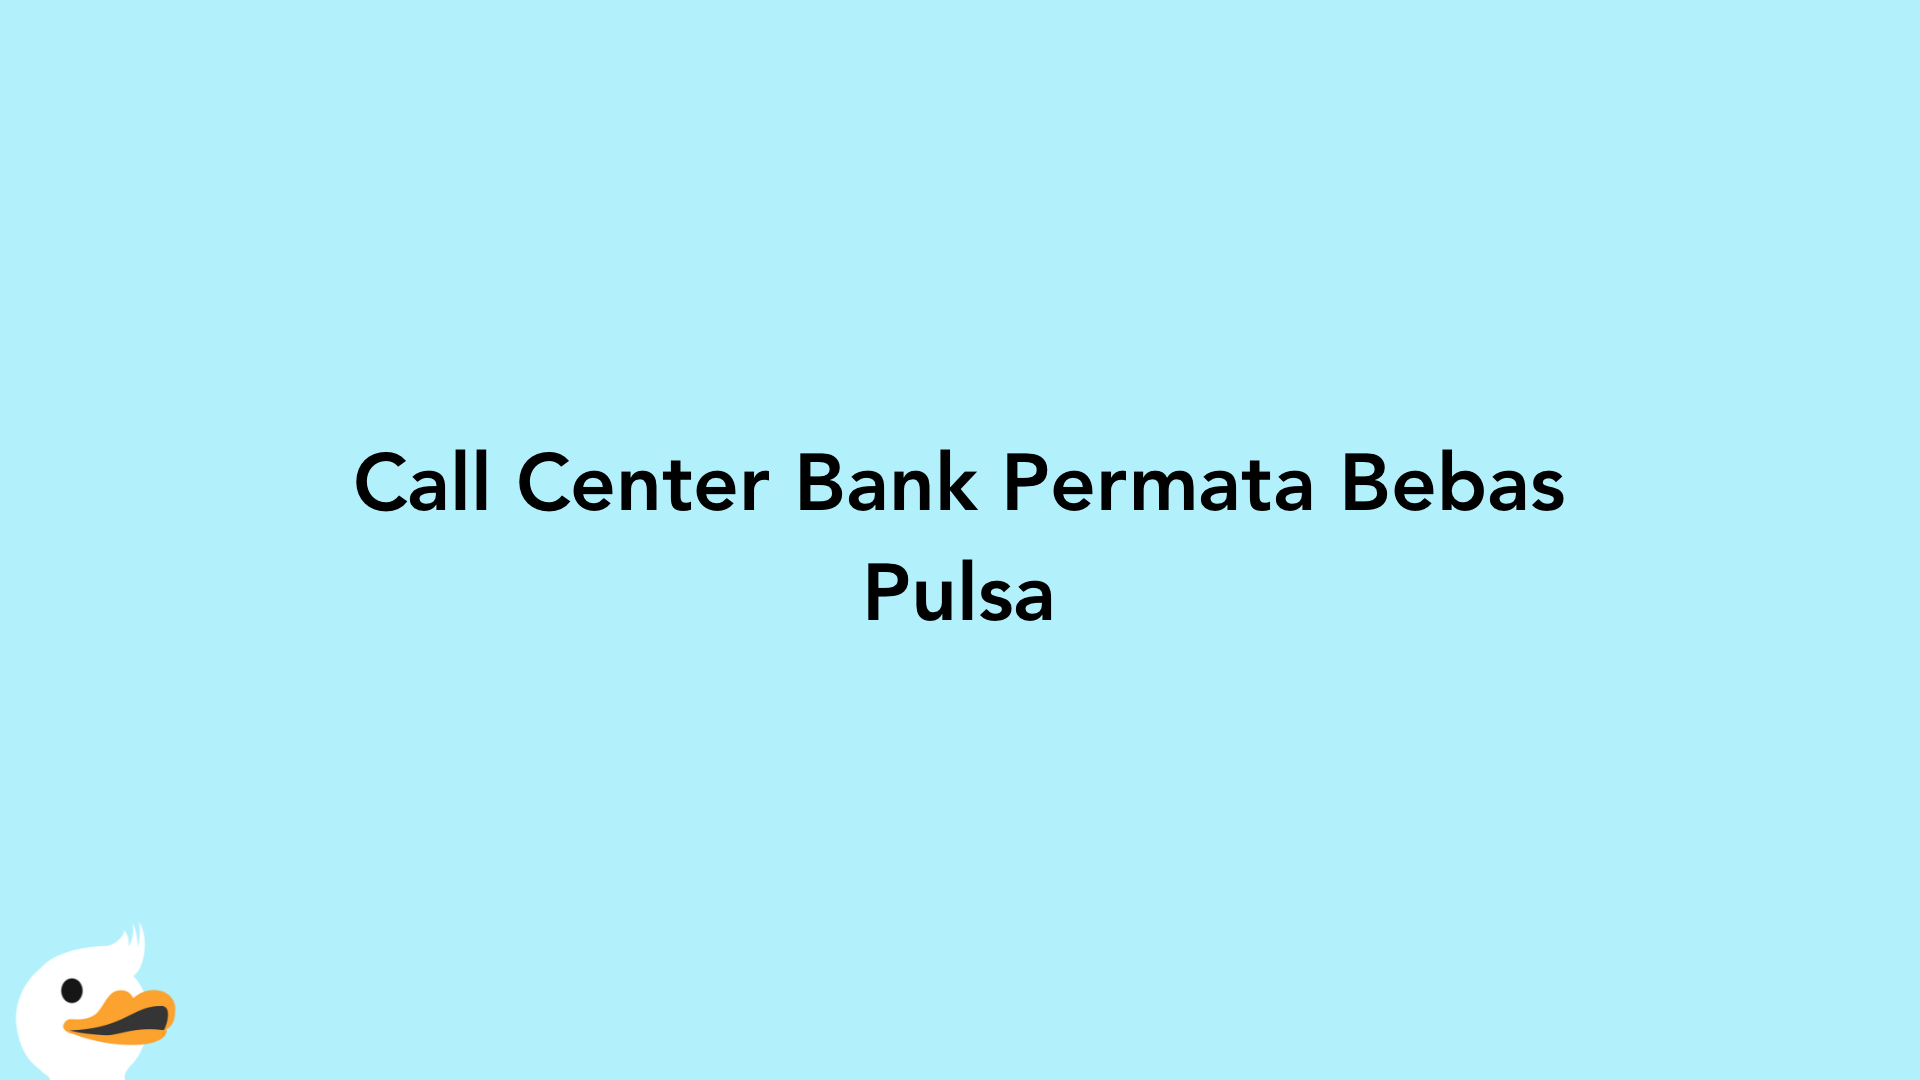 Call Center Bank Permata Bebas Pulsa